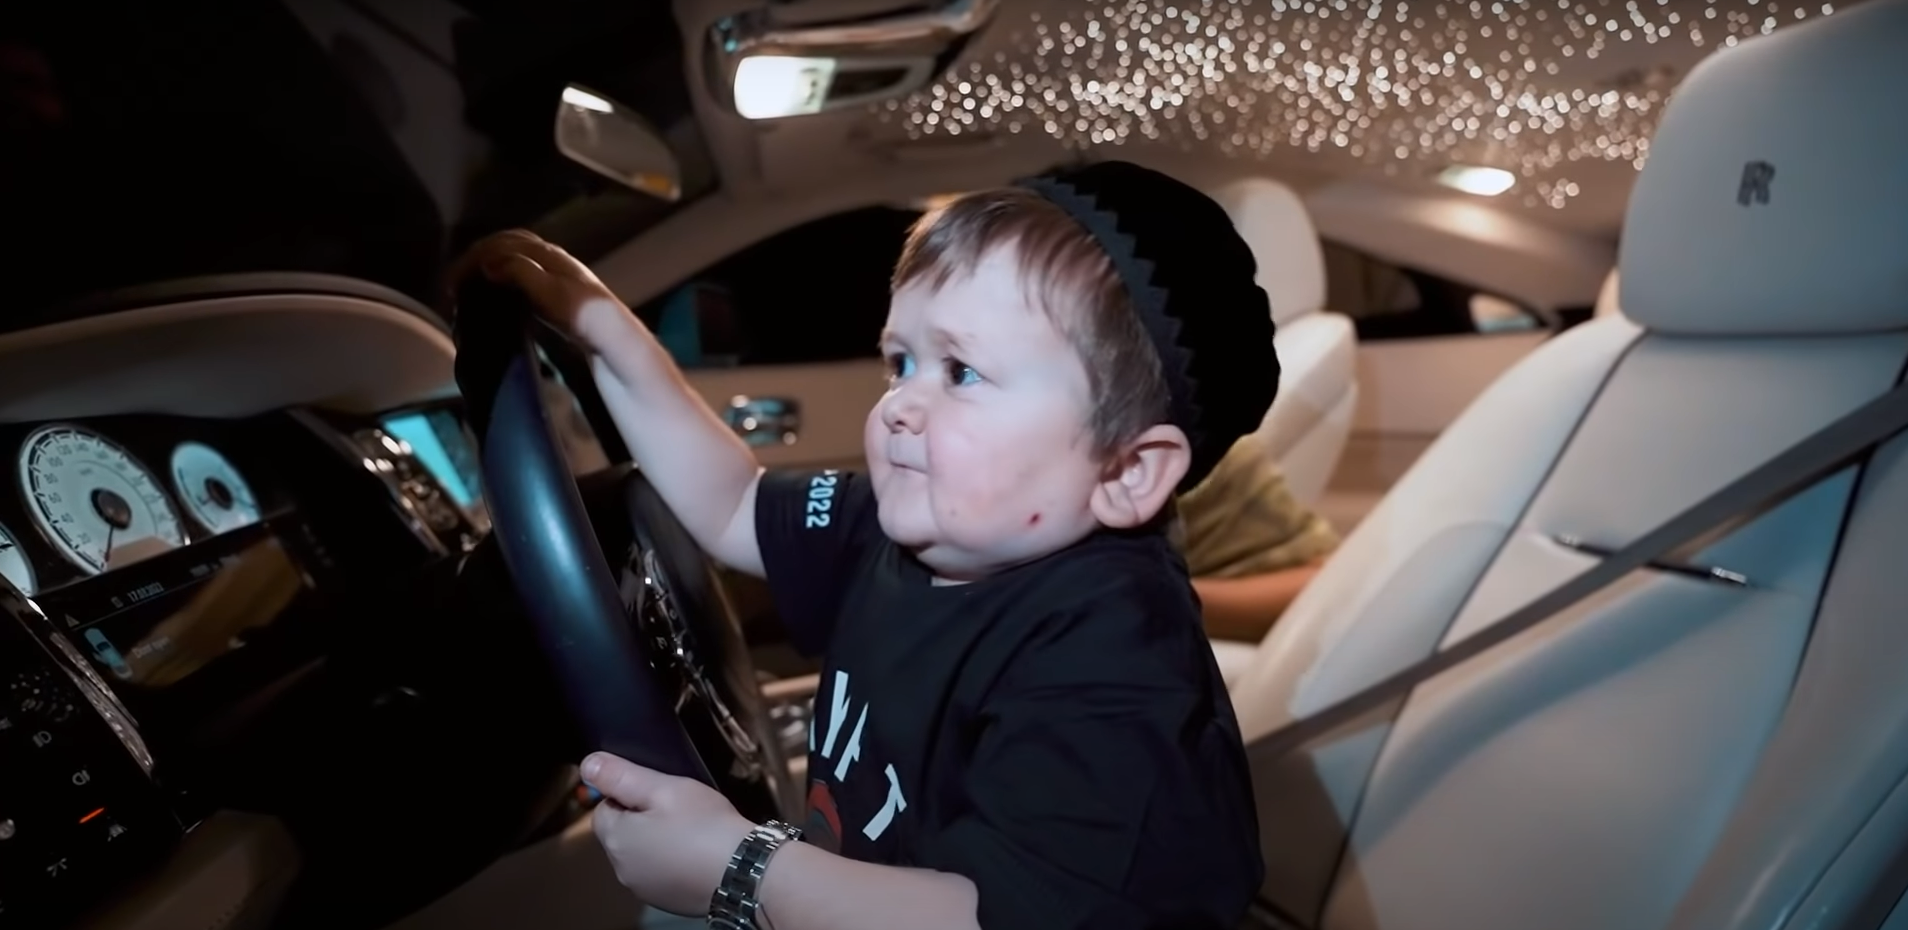 Hasbullah, el conductor con cuerpo de niño que se ha hecho viral